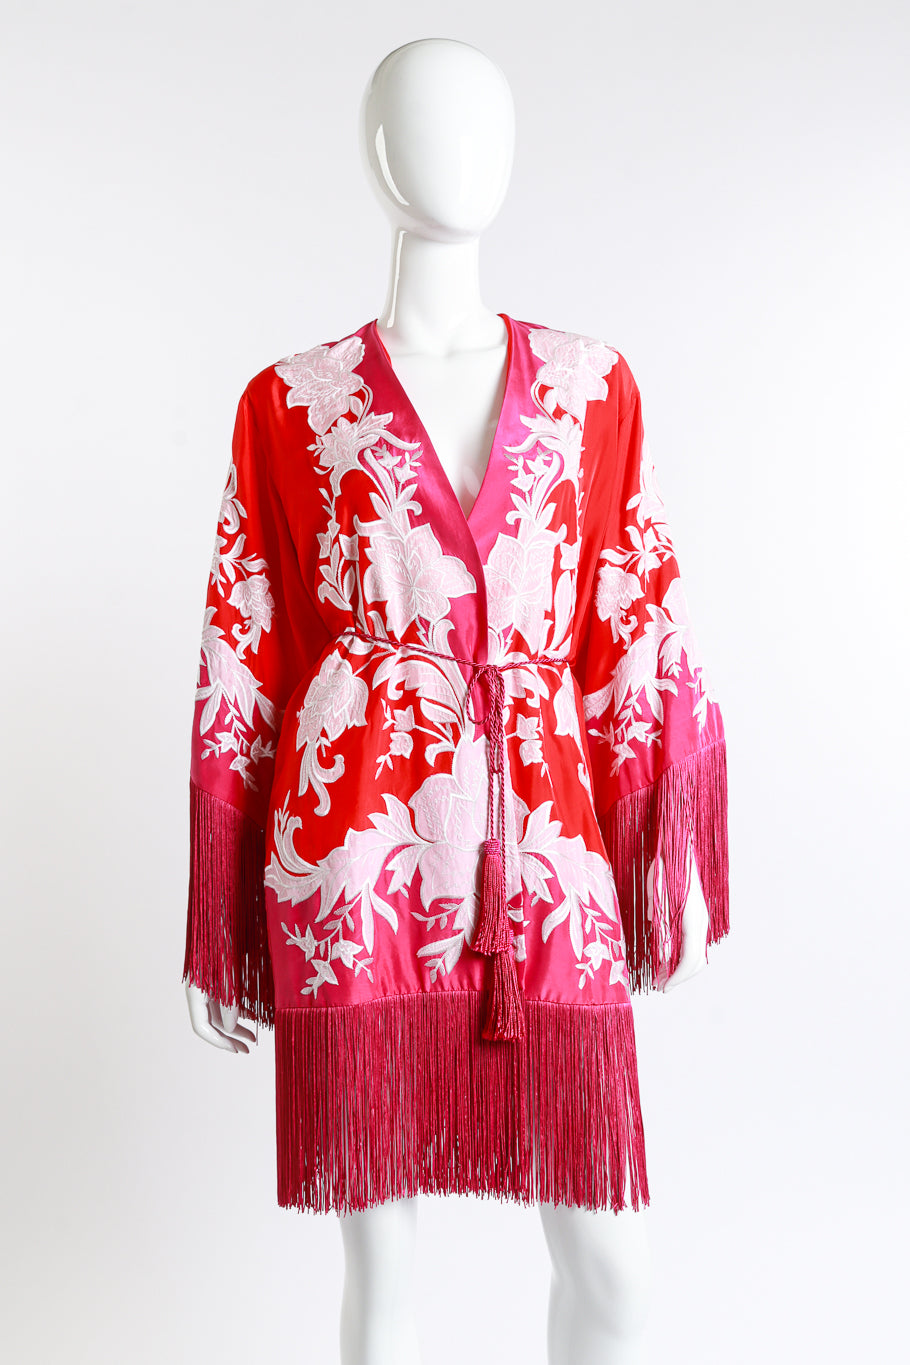 Ungaro Embroidered Floral Fringe Jacket front on mannequin @recess la